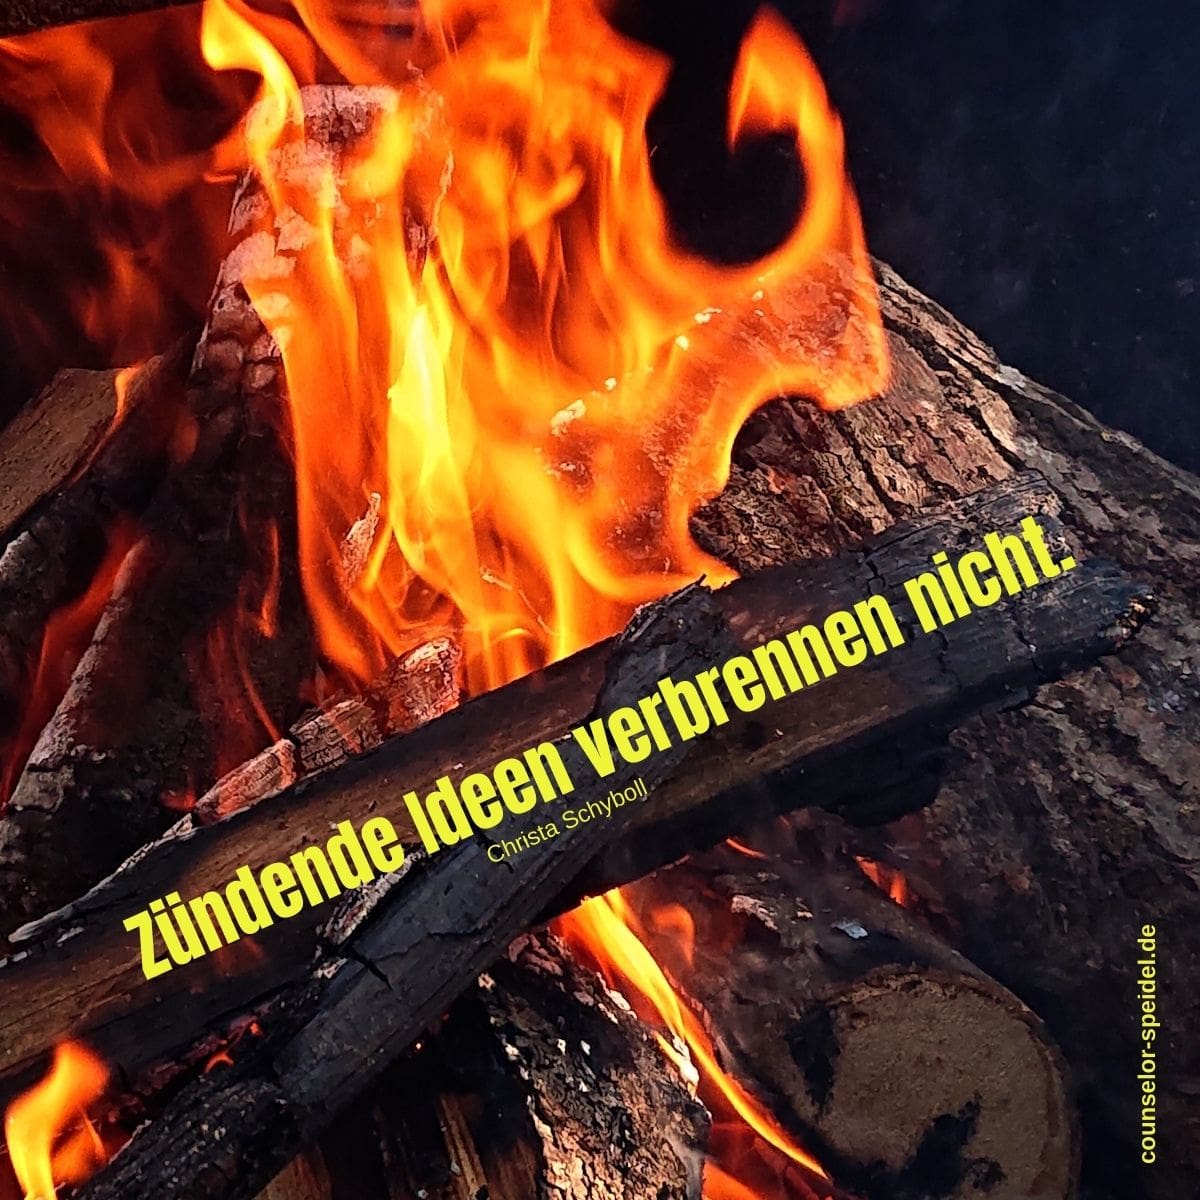 zuendende_ideen_verbrennen_nicht